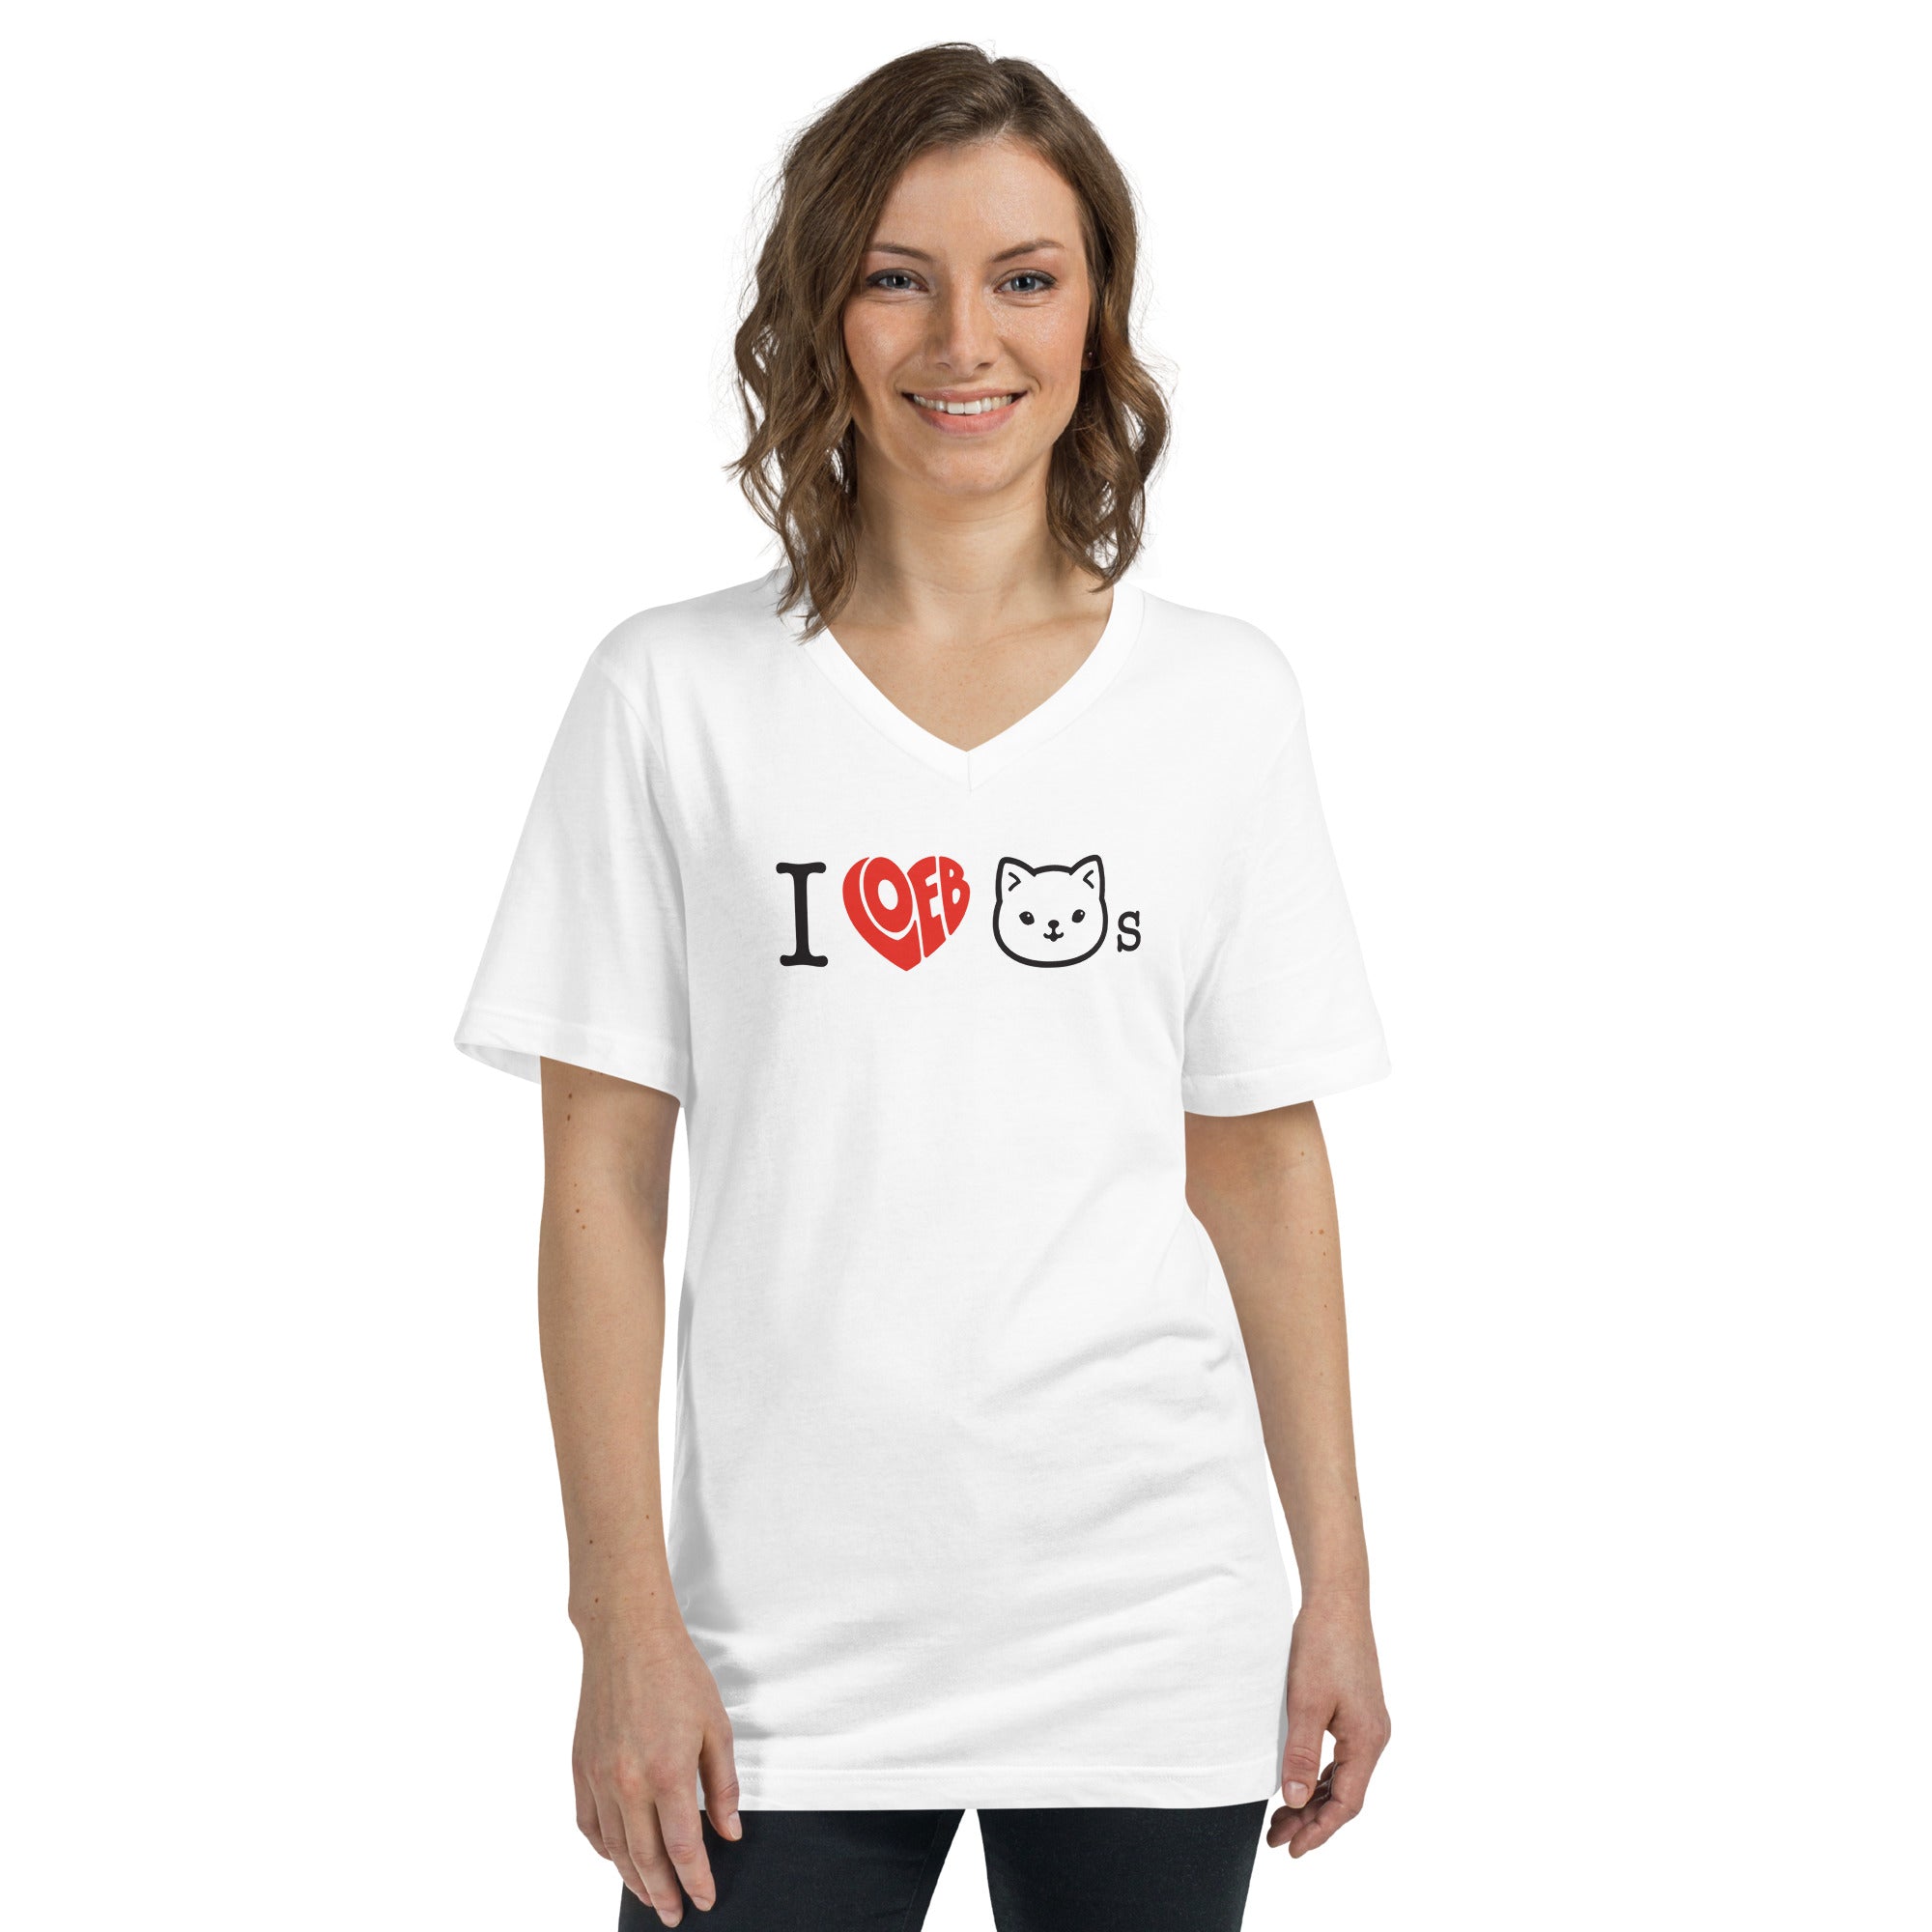 I Loeb Cats Unisex Short Sleeve V-Neck T-Shirt (Graphic)